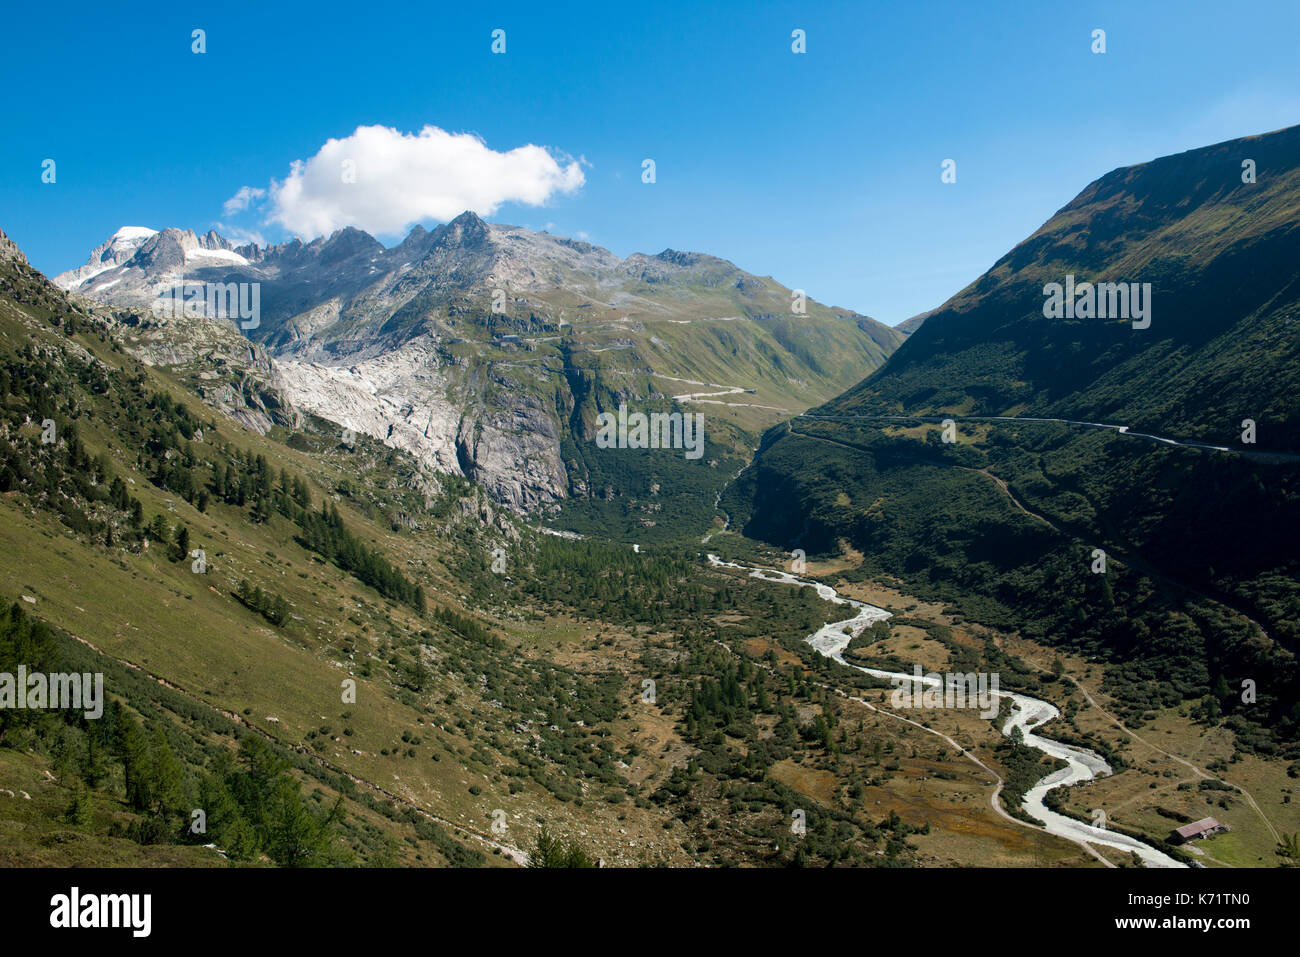 Furka pass road con el glaciar del Ródano, vista desde el grimsel pass, Valais, Suiza Foto de stock